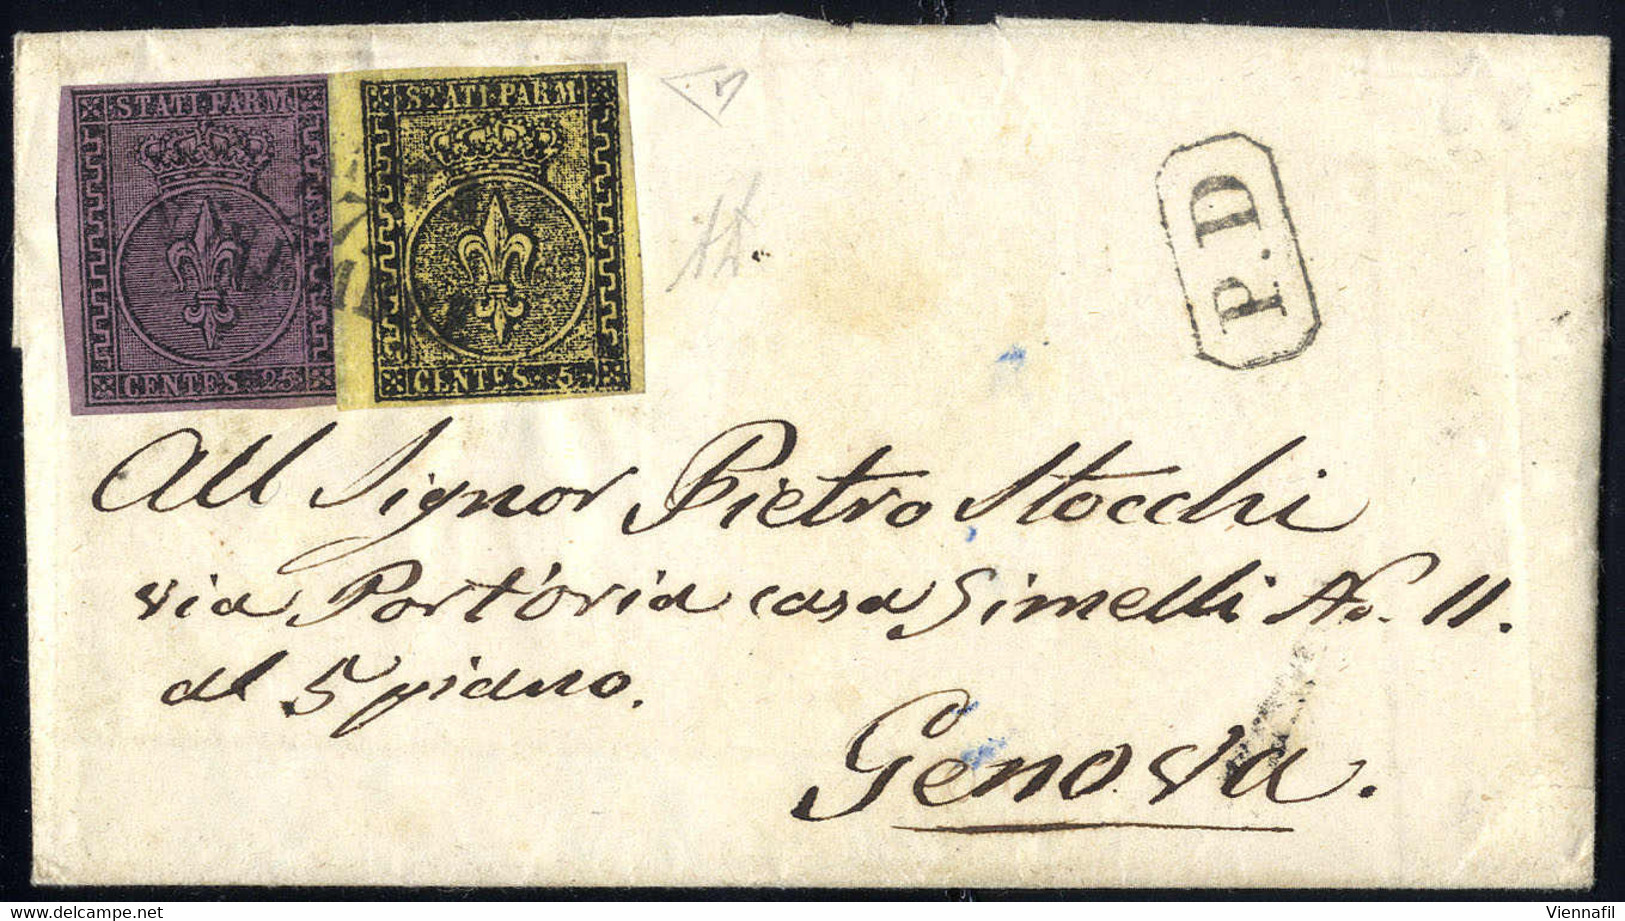 Cover 1855, Lettera Da Parma Del 27.11. Per Genova Con Affrancatura Bicolore Per 30 C. Con 5 C. Giallo Del Bordo Di Fogl - Parma